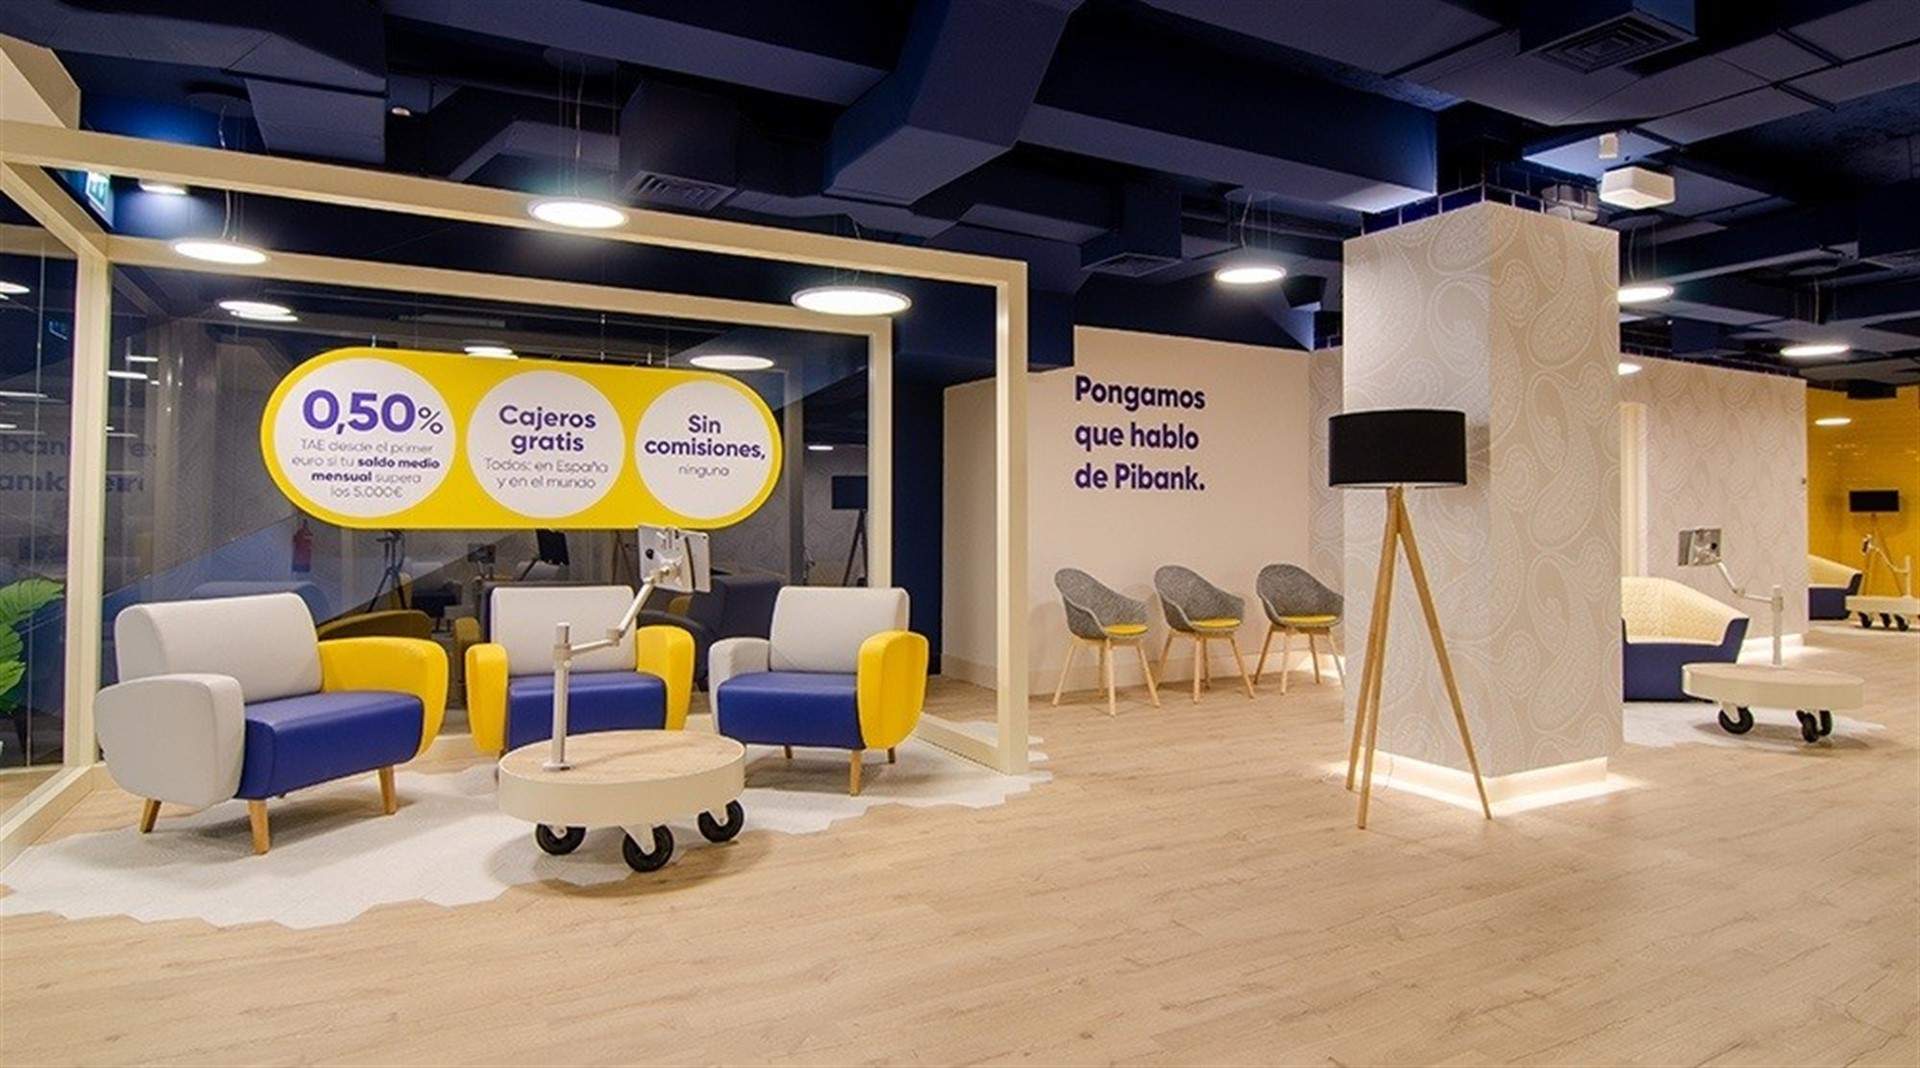 Oficina de Pibank, el banco digital del grupo Pichincha en España